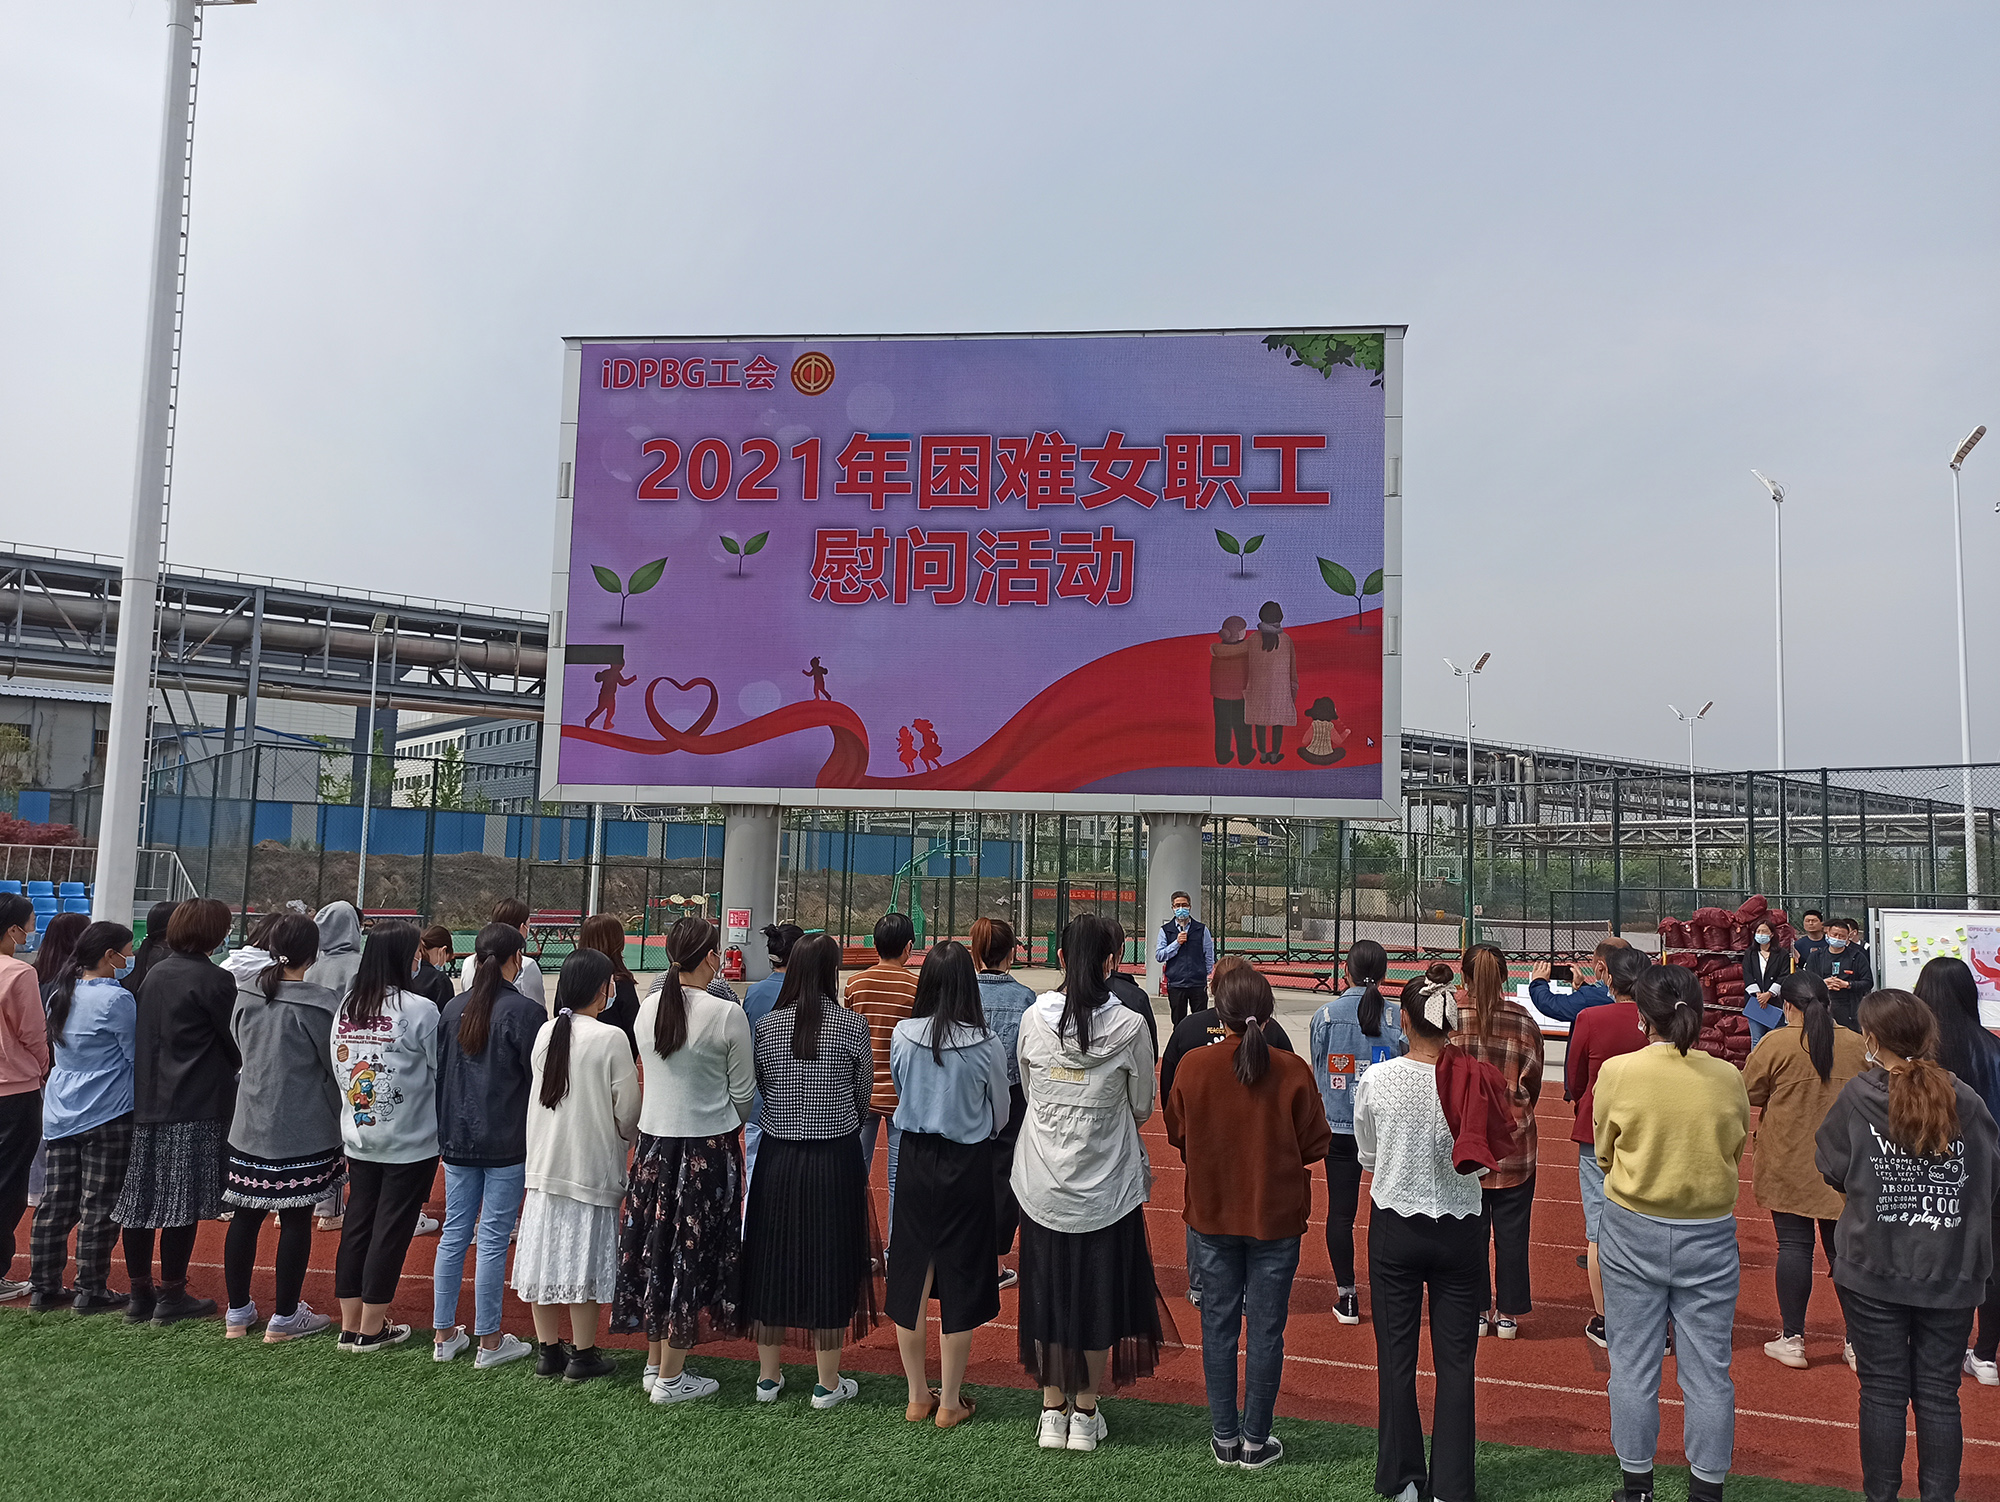 【郑州园区】iDPBG工会举办困难女职工慰问活动